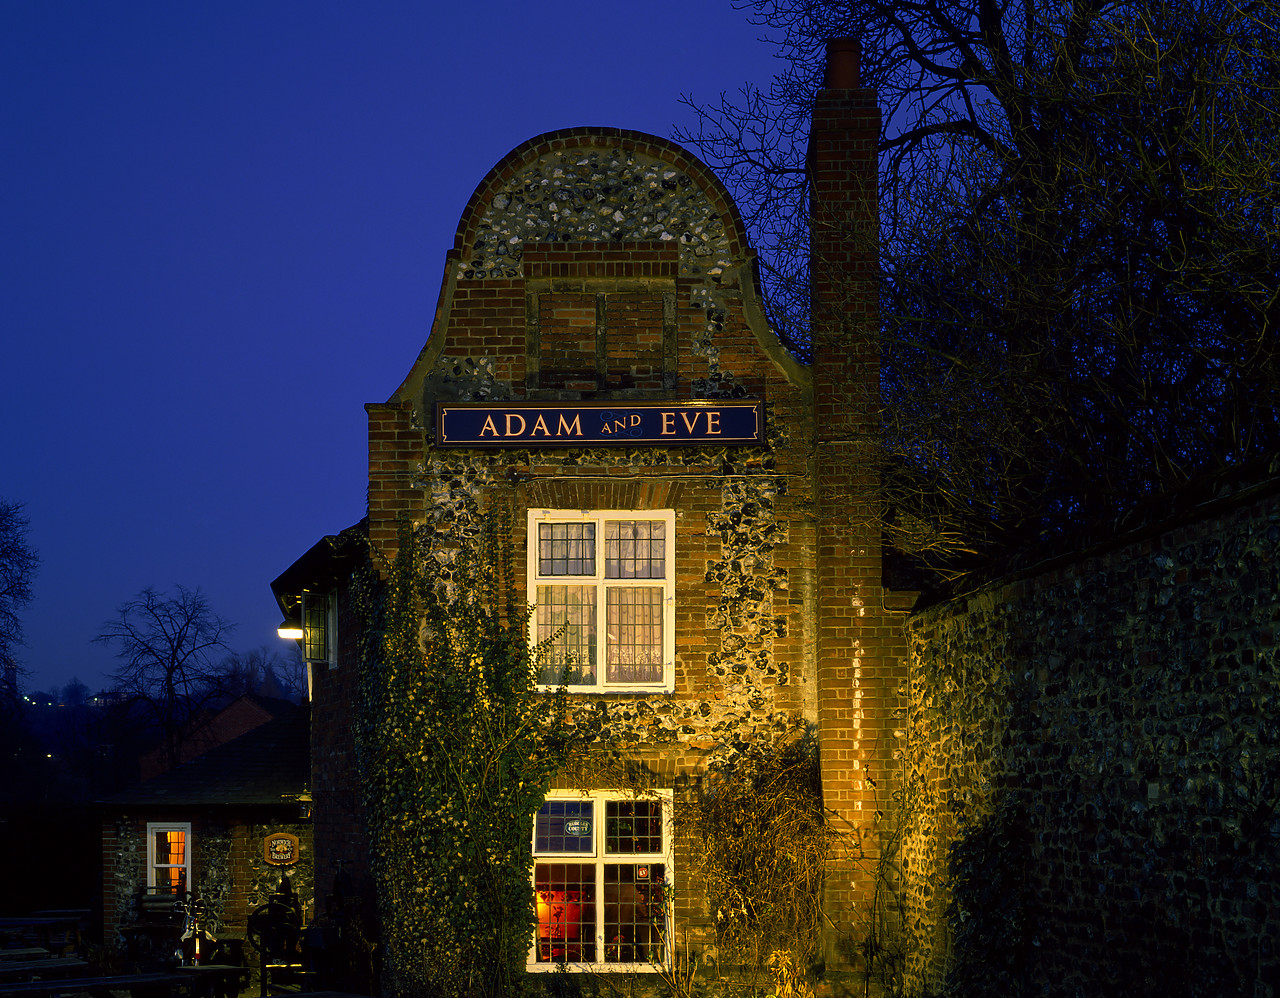 #913275-1 - Adam & Eve Pub at Night, Norwich, Norfolk, England